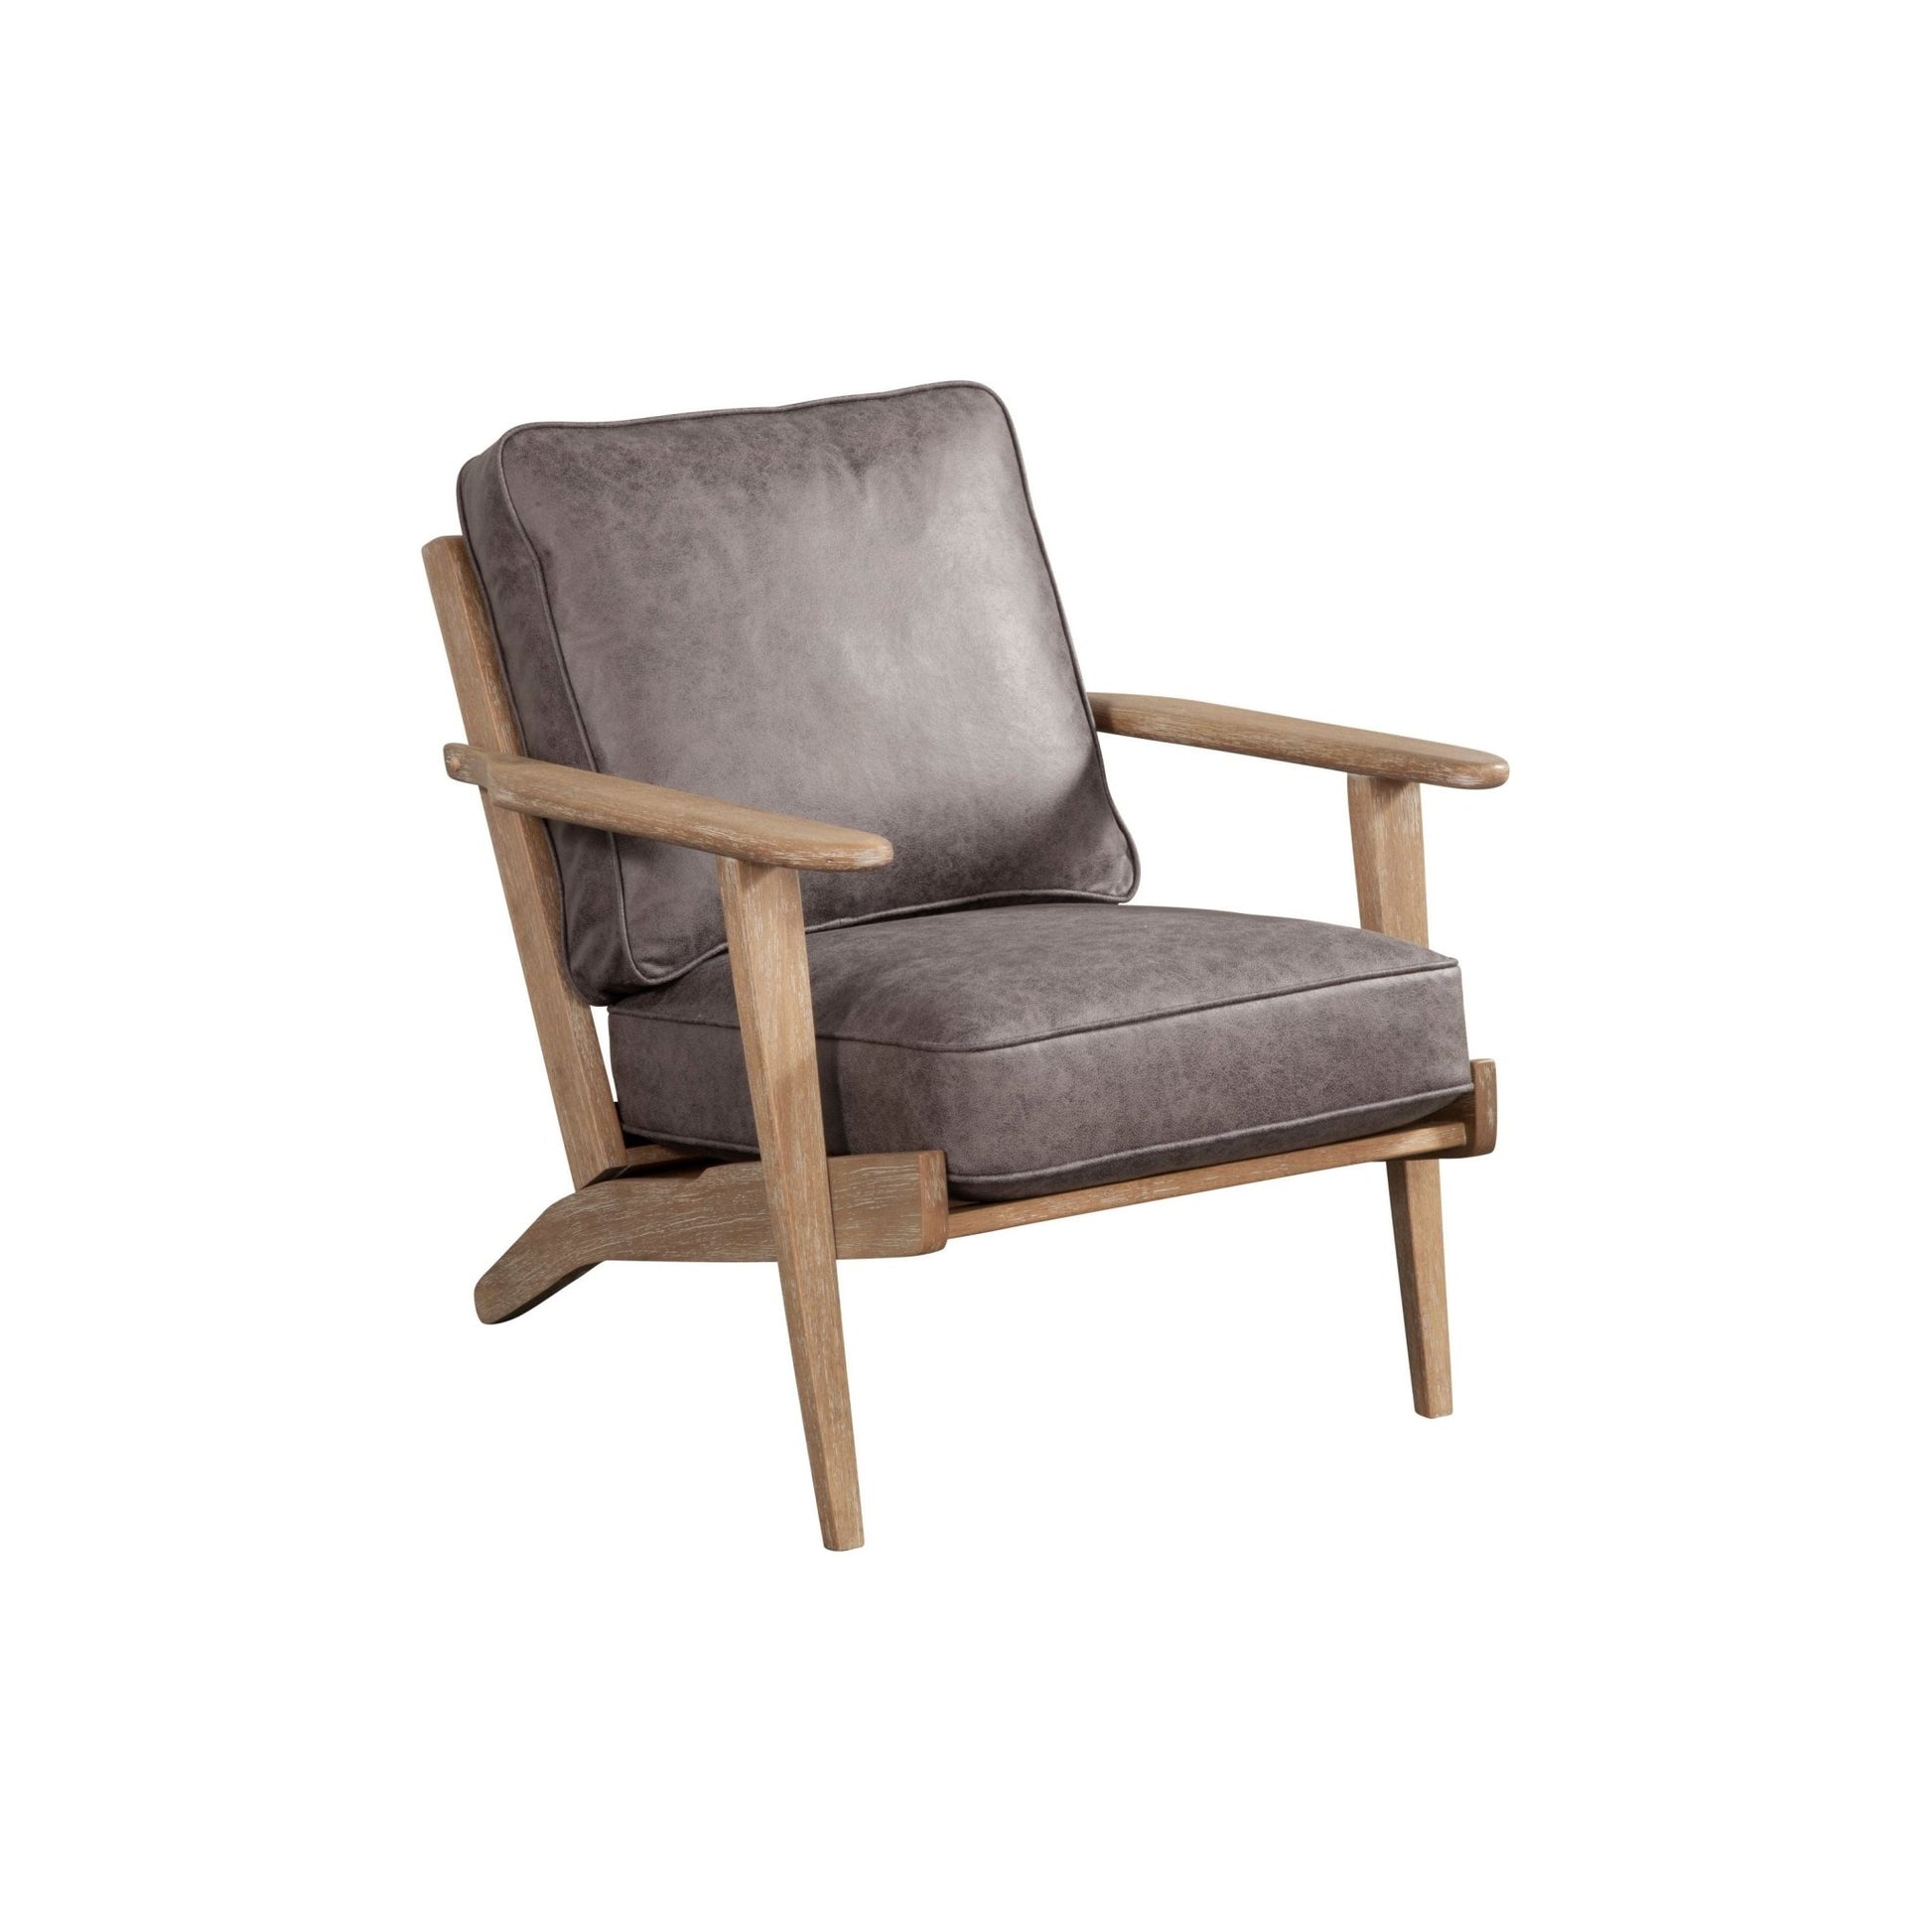 Artica Lounge Chair - Alpine Furniture